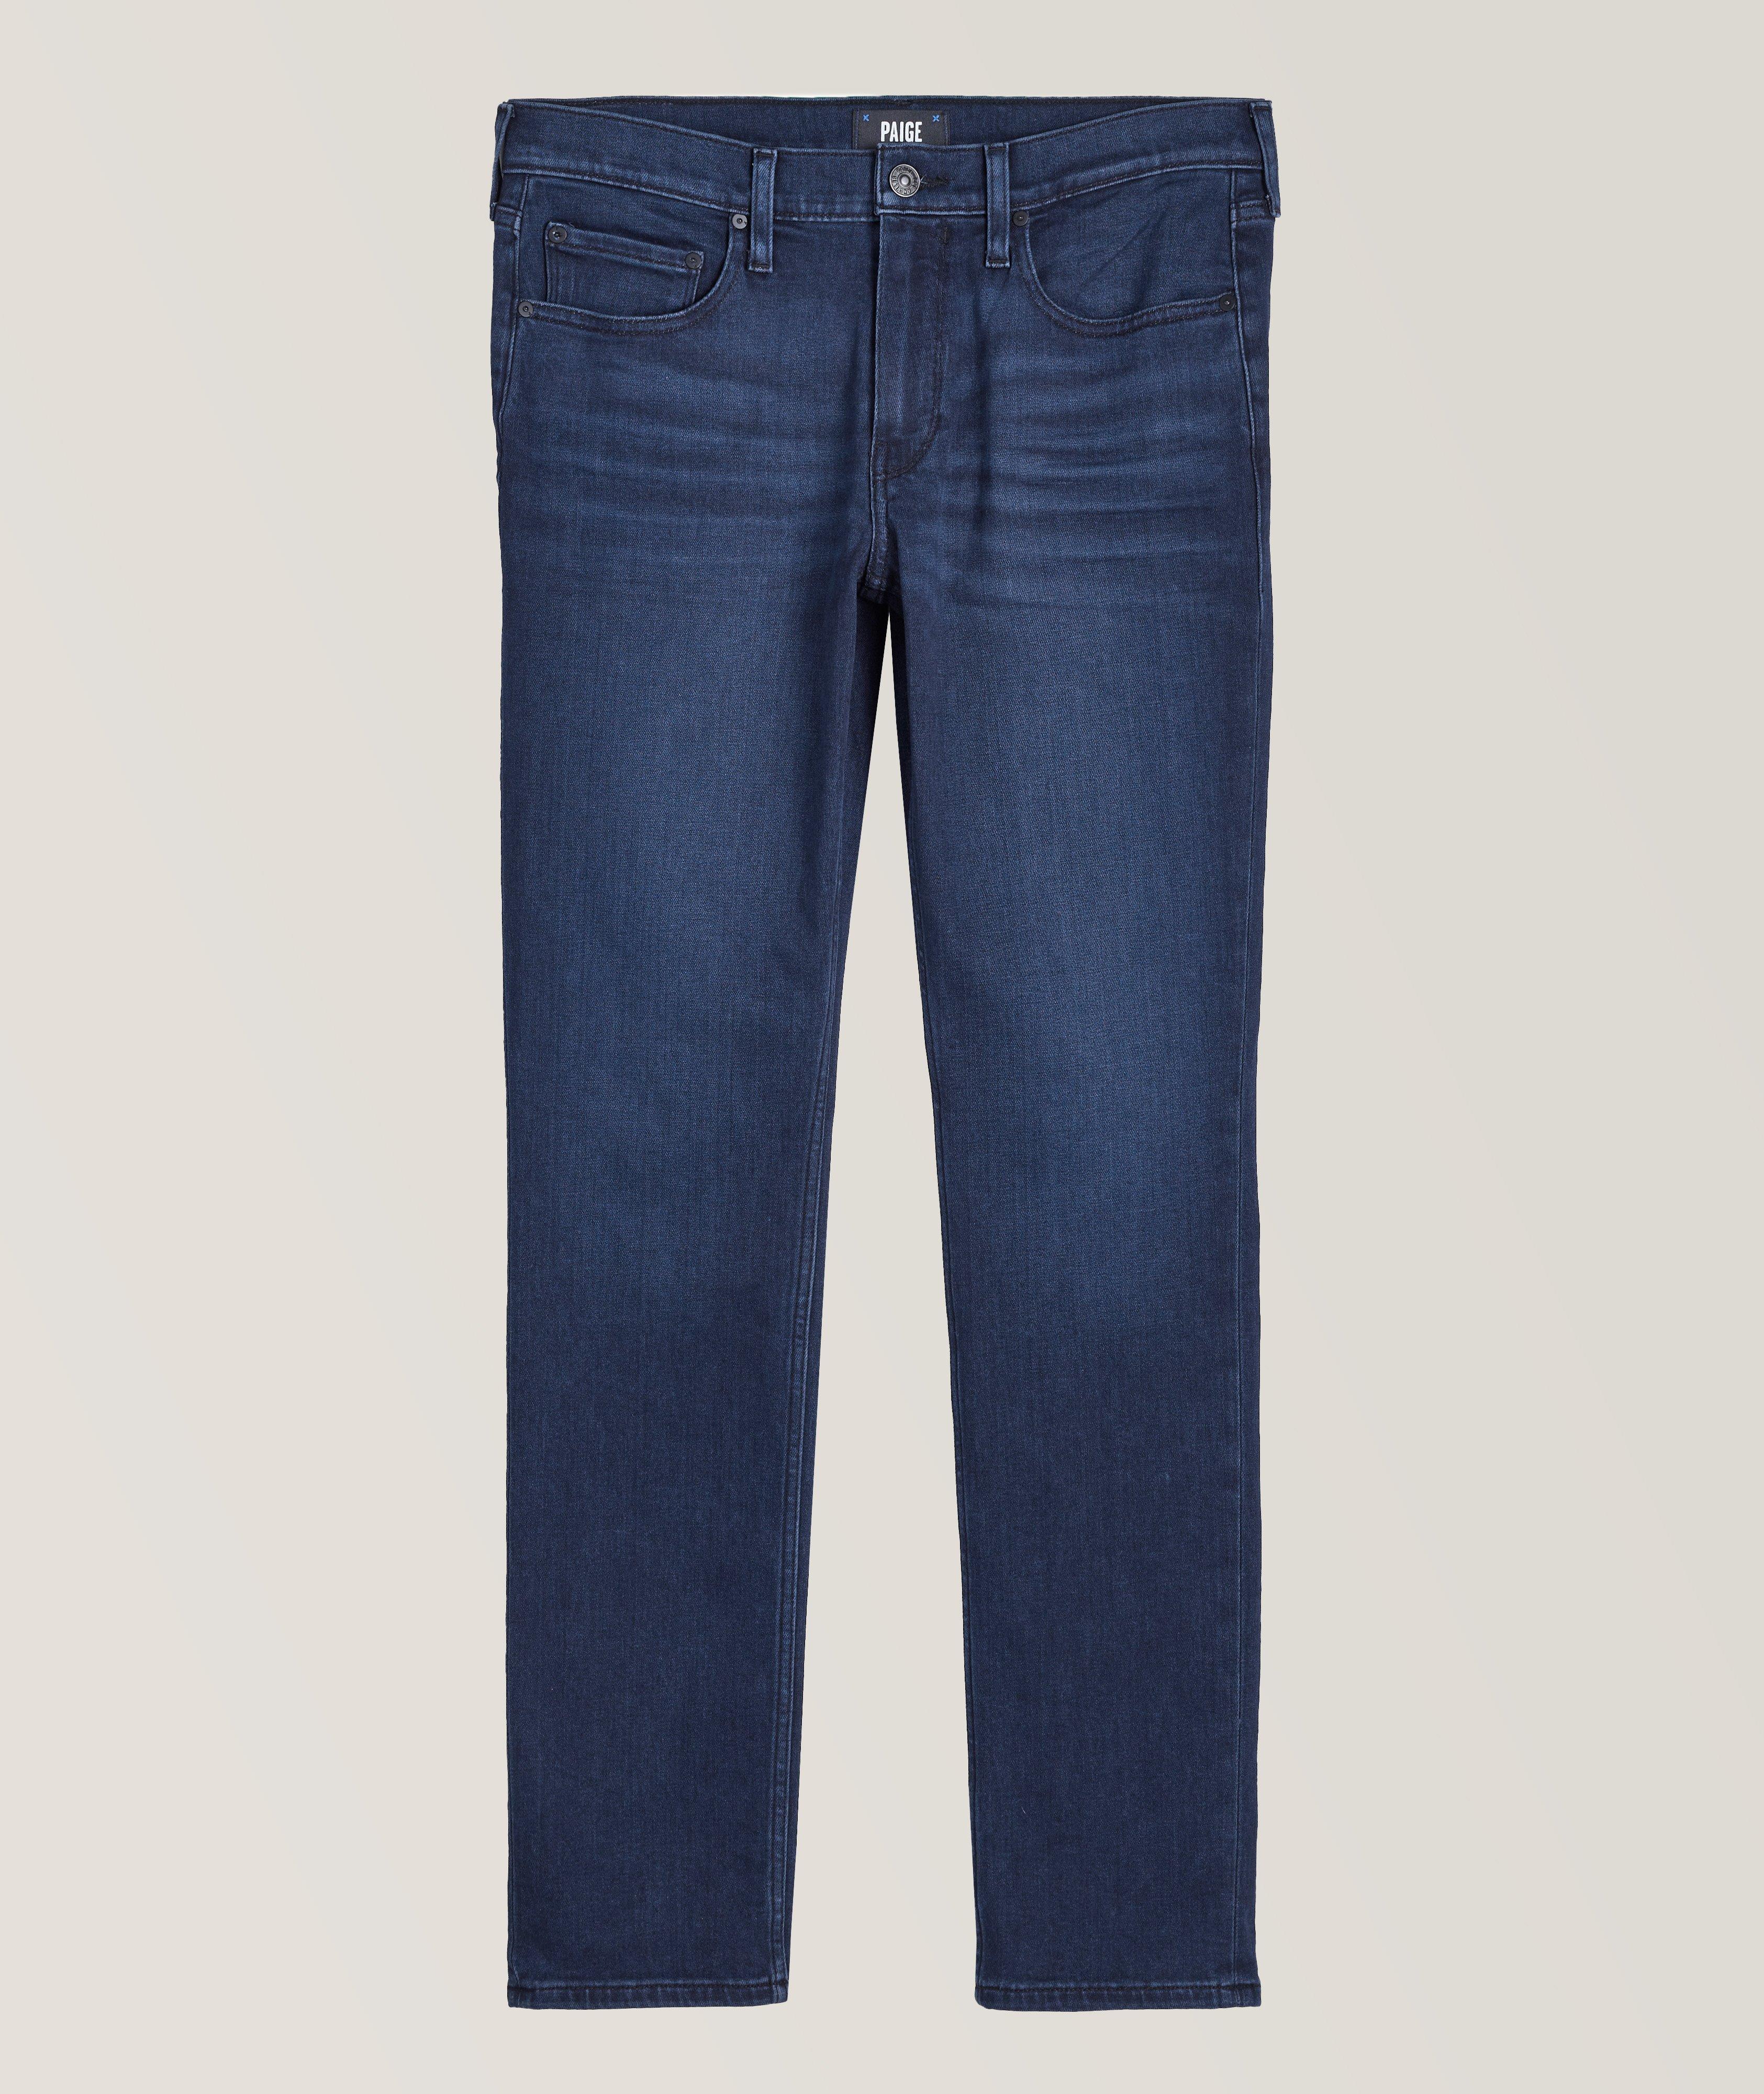 Lennox Slim Fit Transcend Vintage Jeans image 0